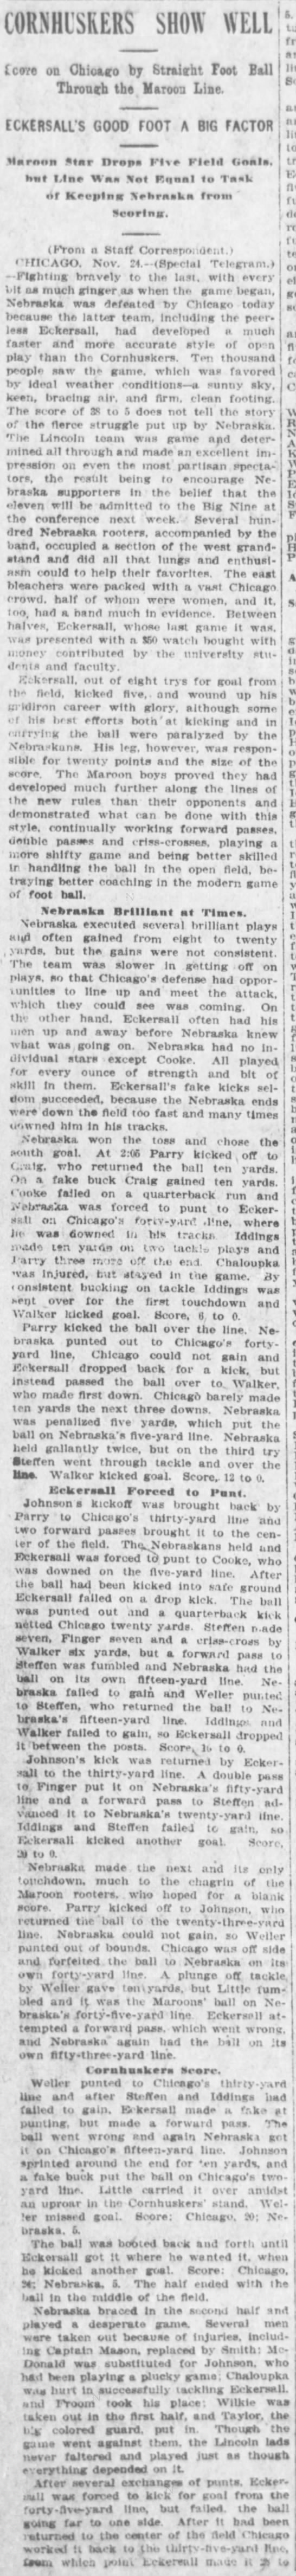 1906 Chicago-Nebraska football part 1 - 